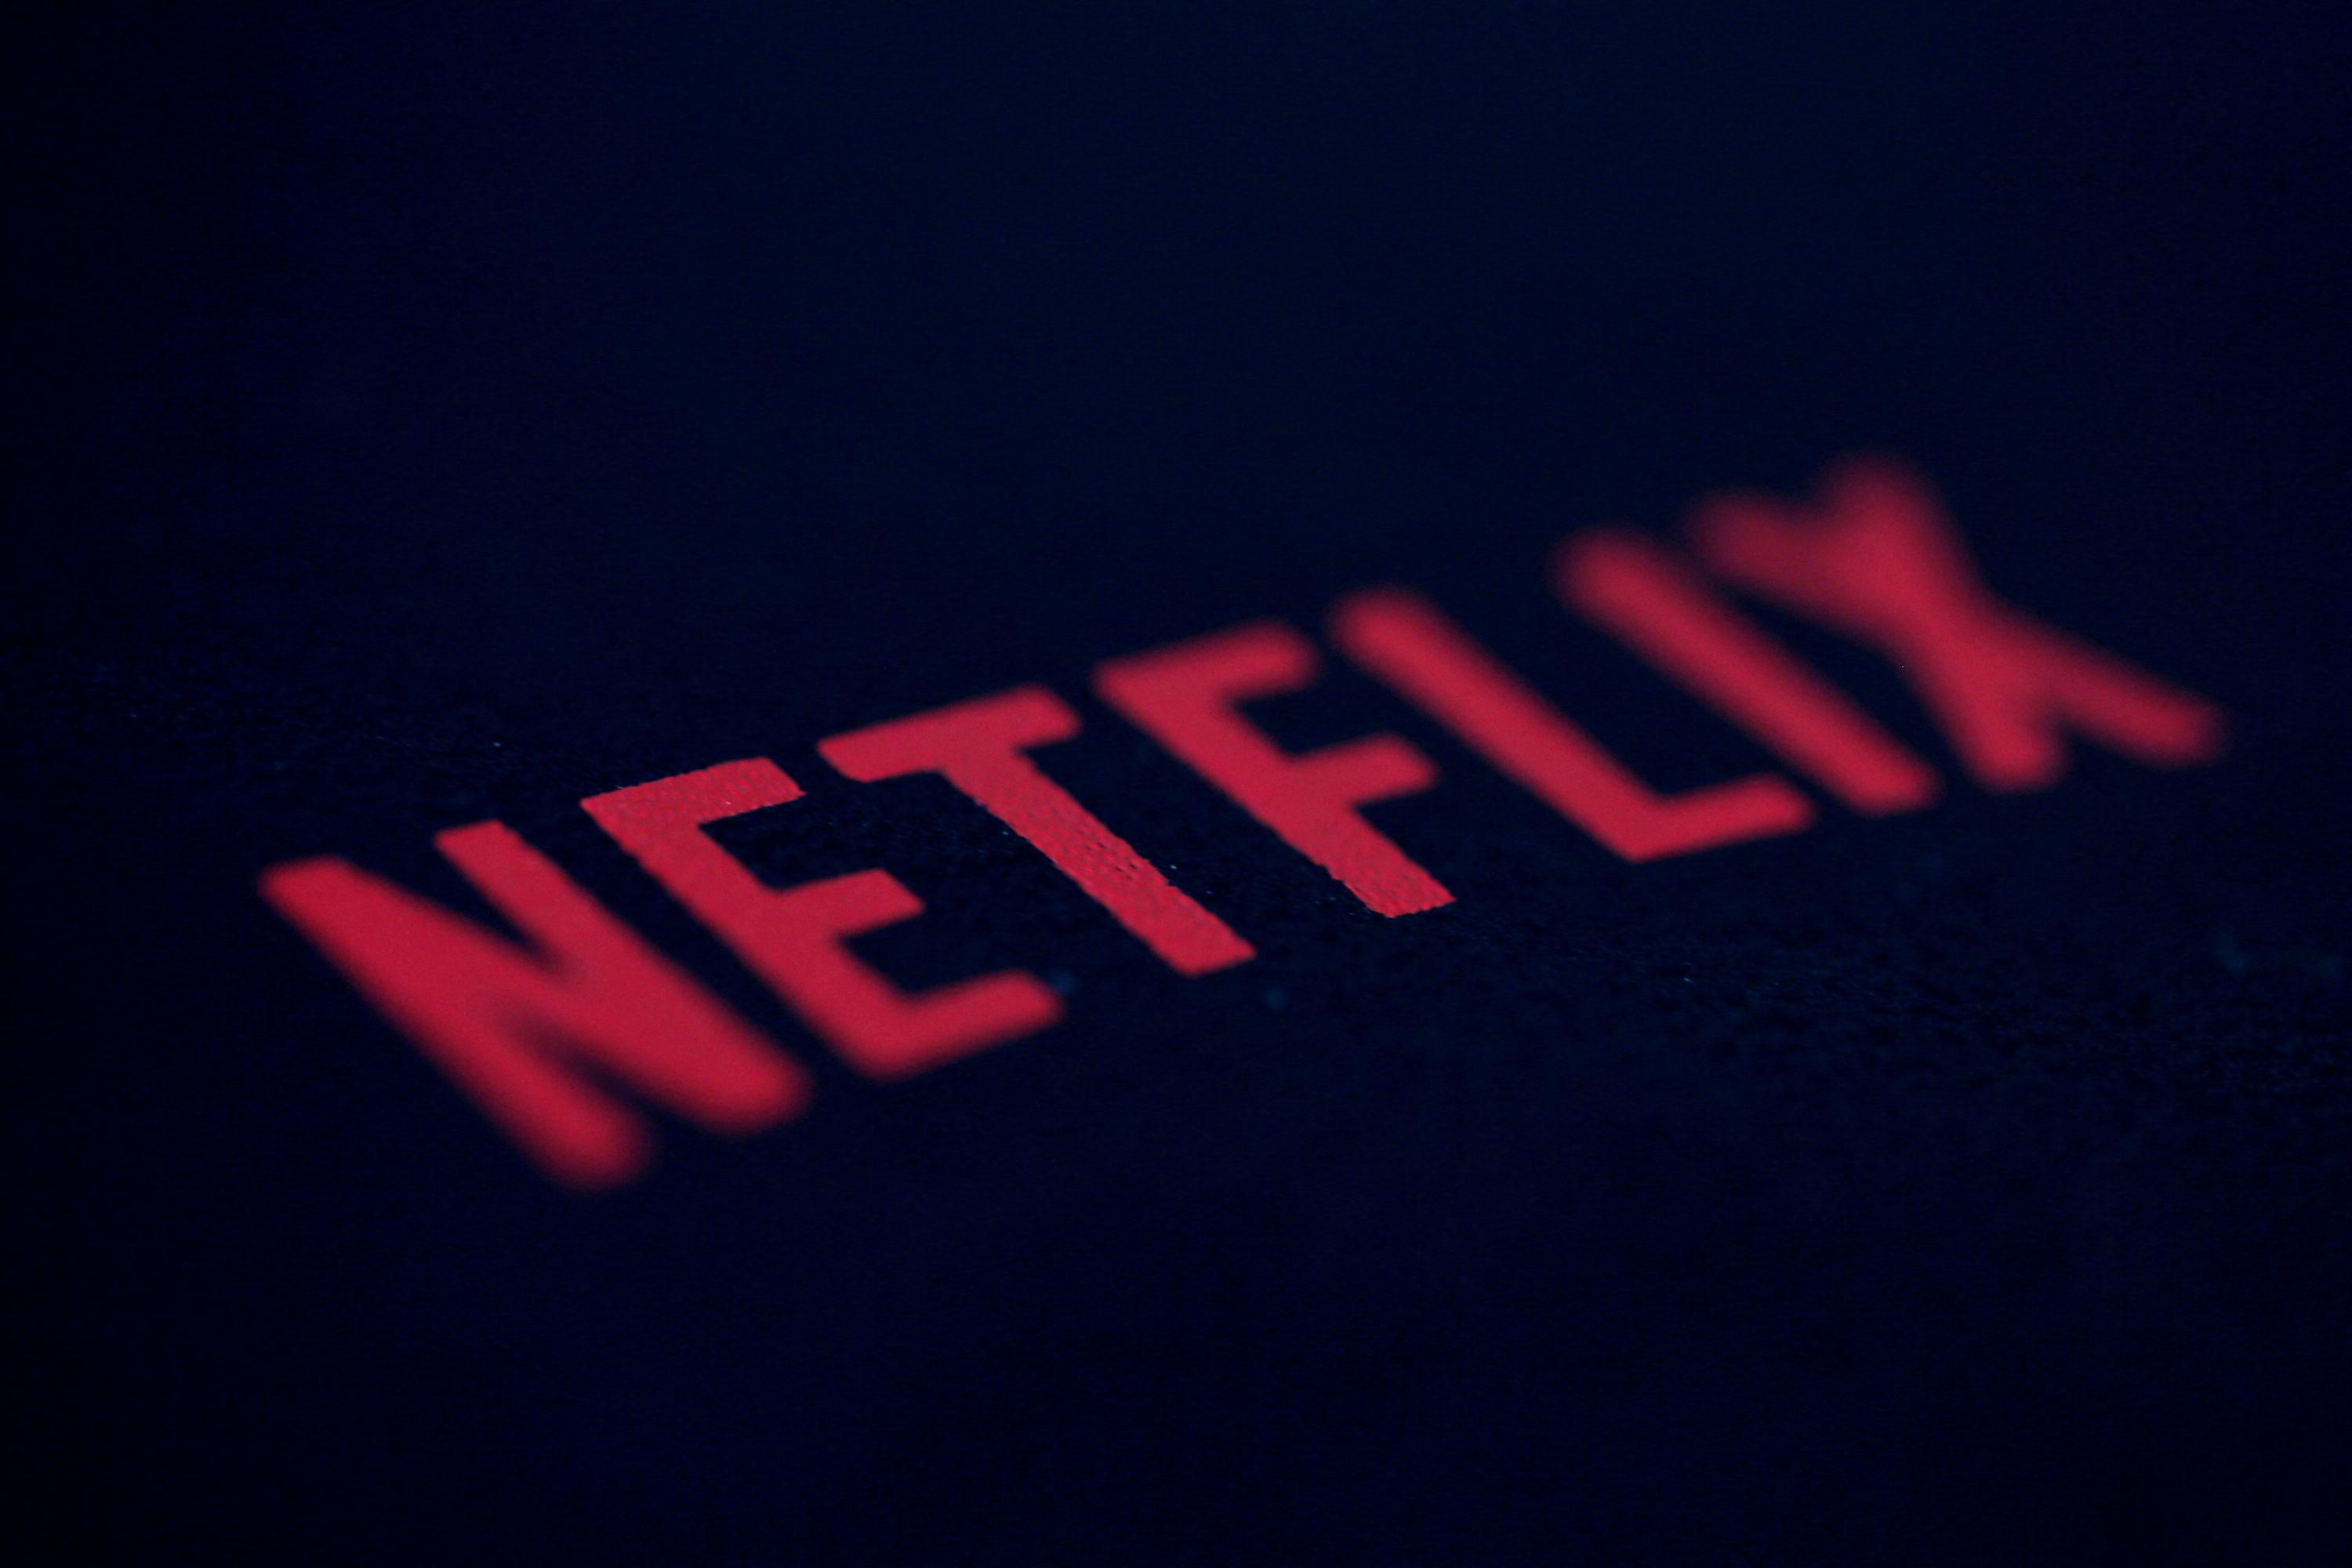 Netflix planeja primeira transmissão esportiva ao vivo